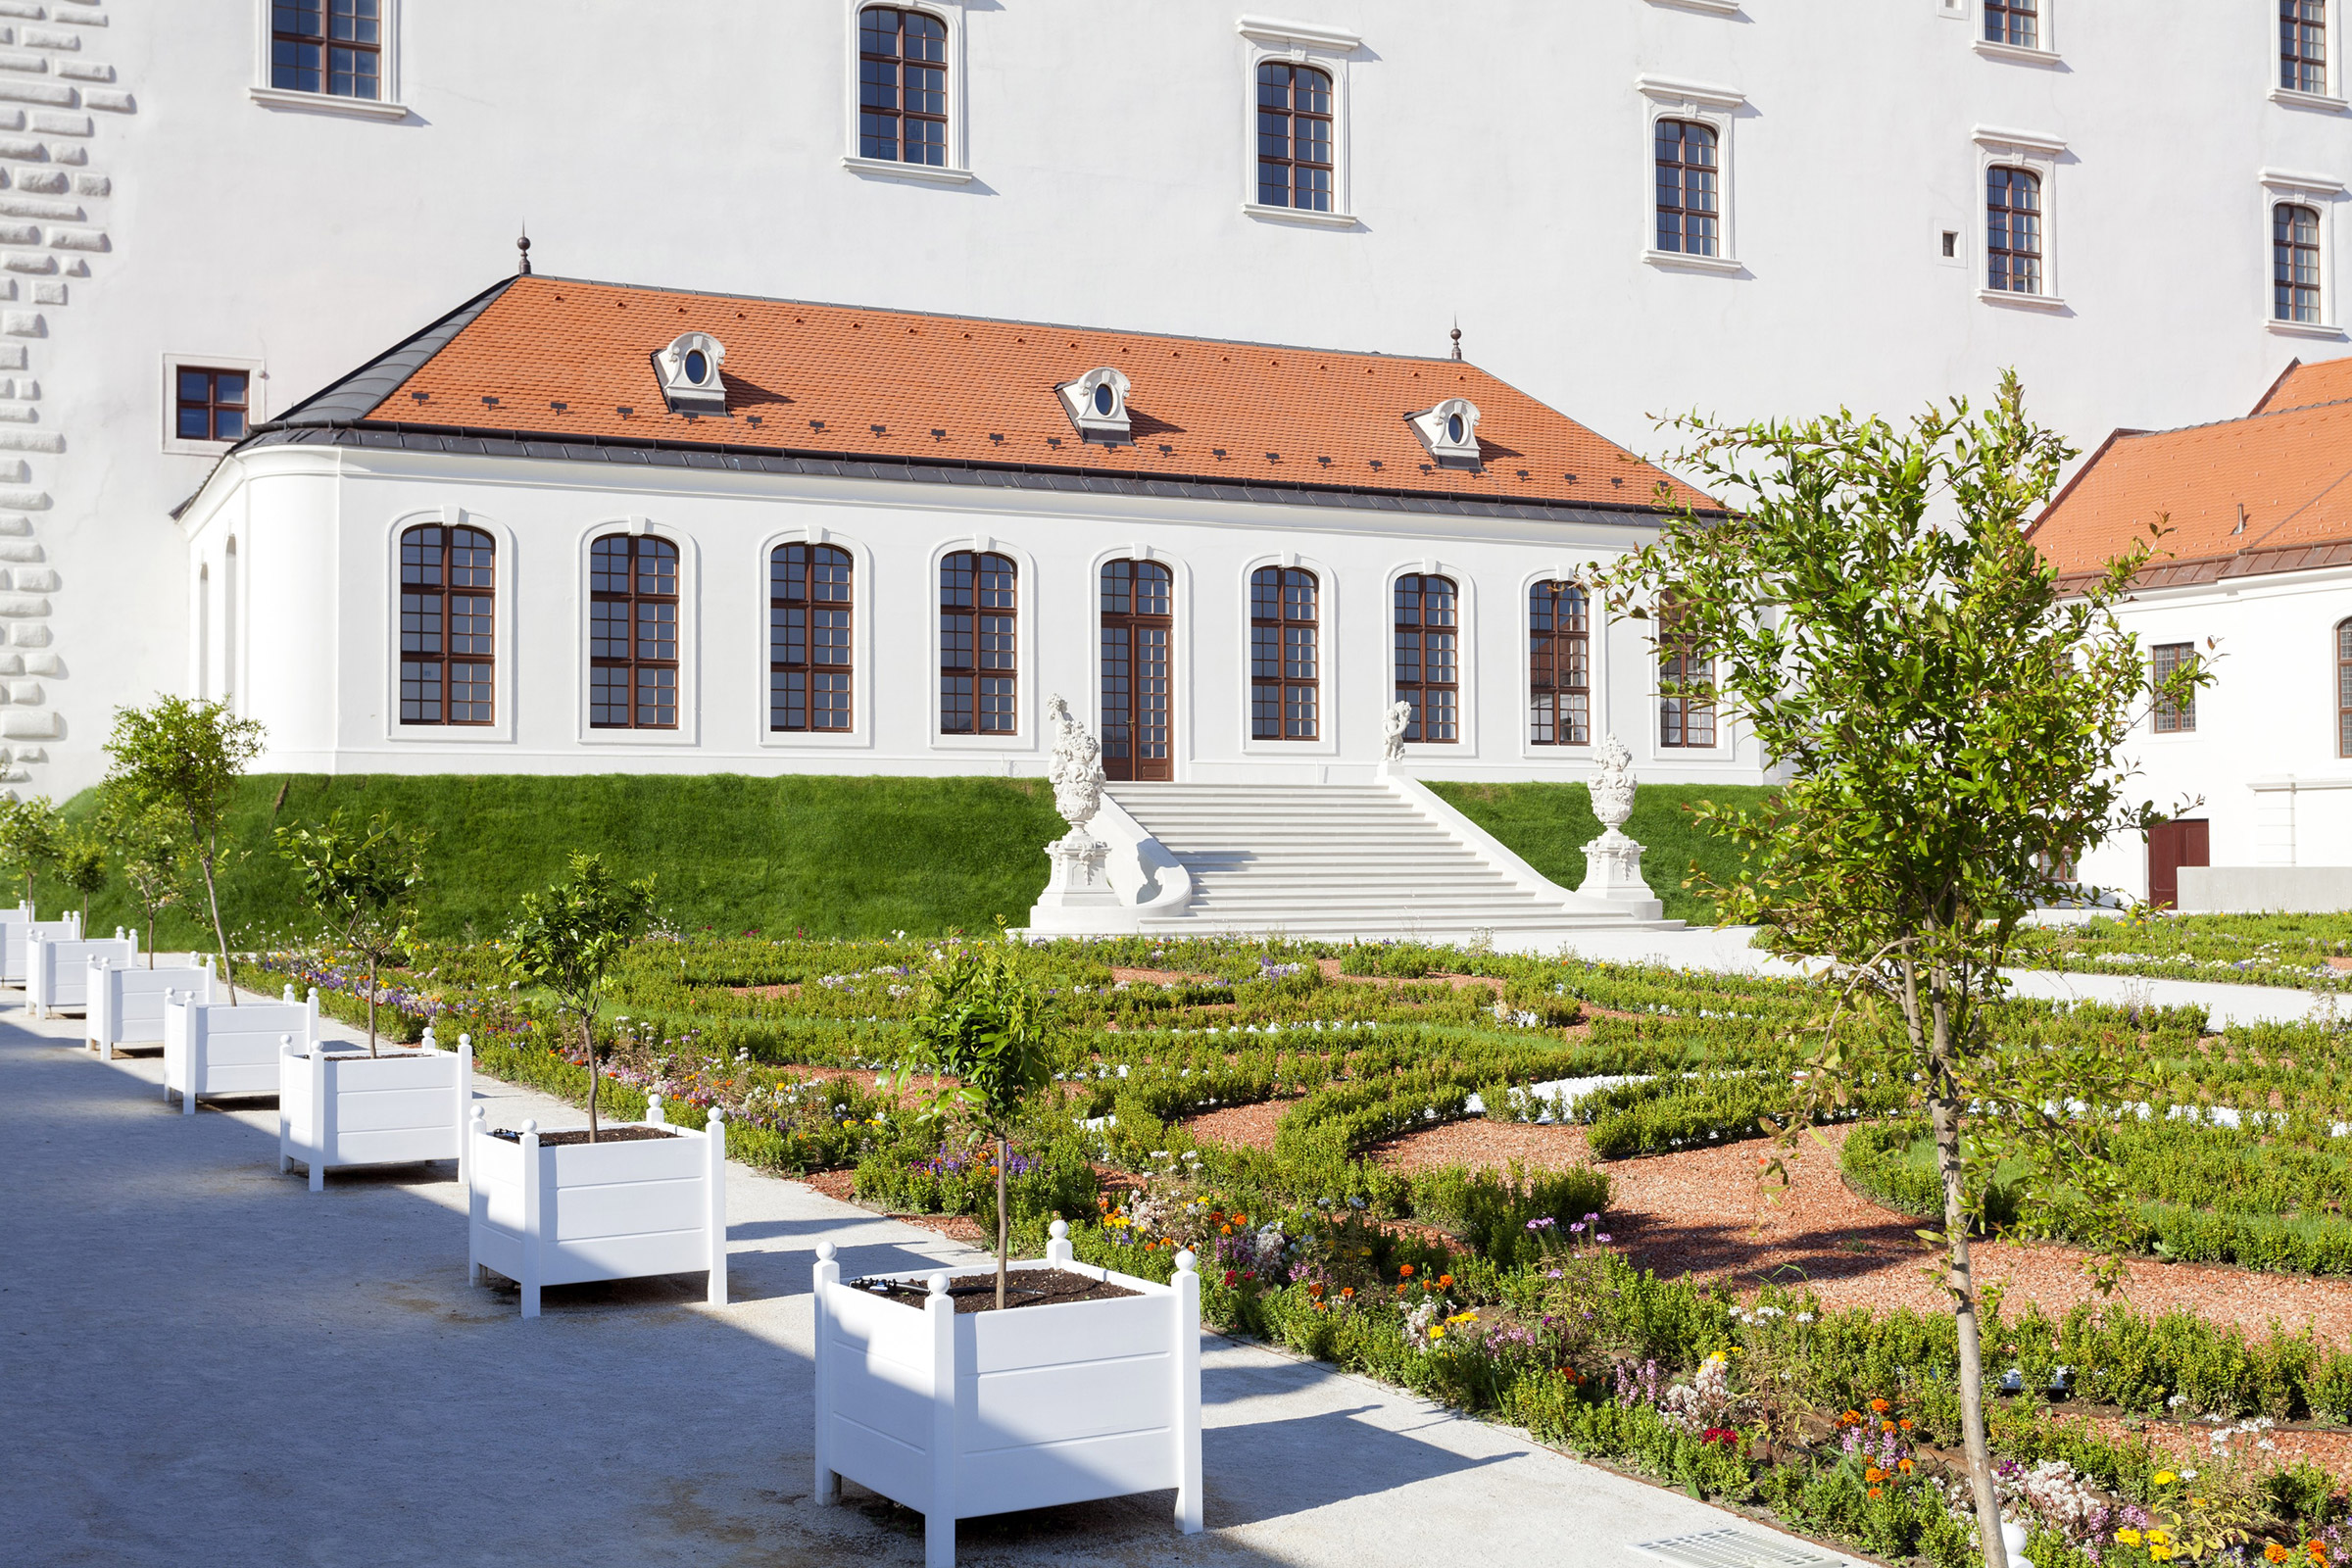 Bratislava Castle - Baroque Garden